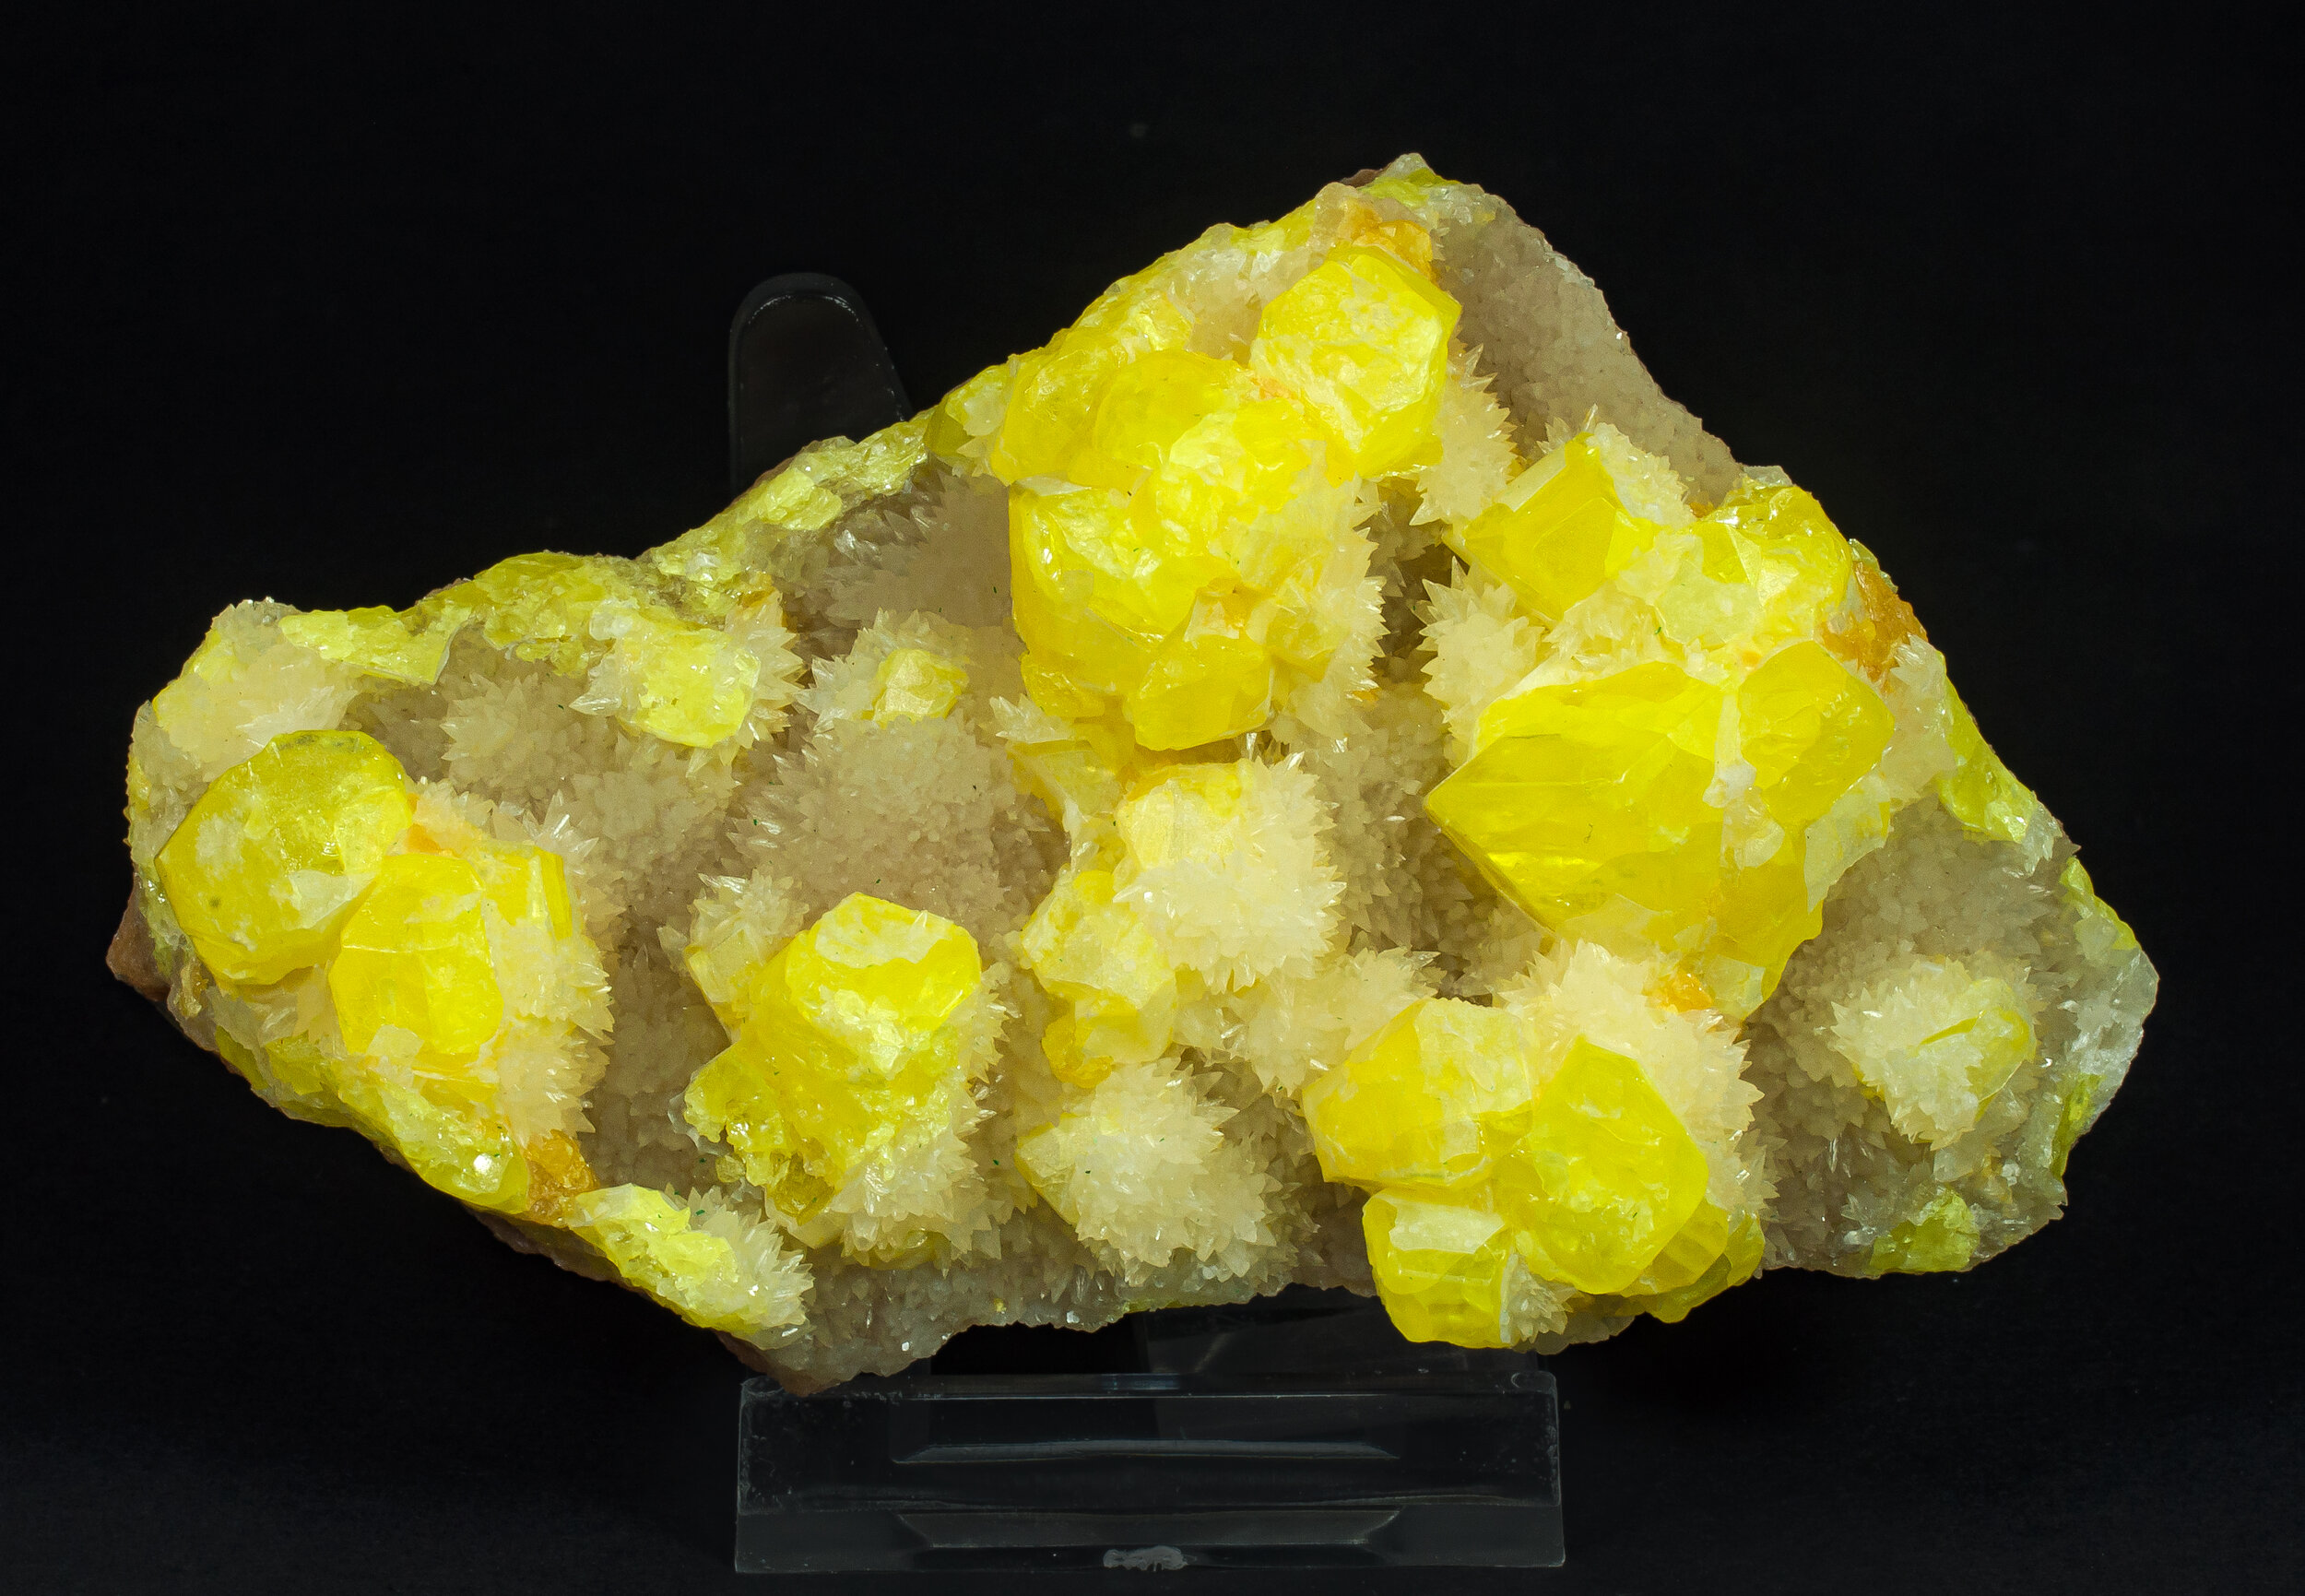 specimens/s_imagesAP3/Sulfur-EPP68AP3f.jpg